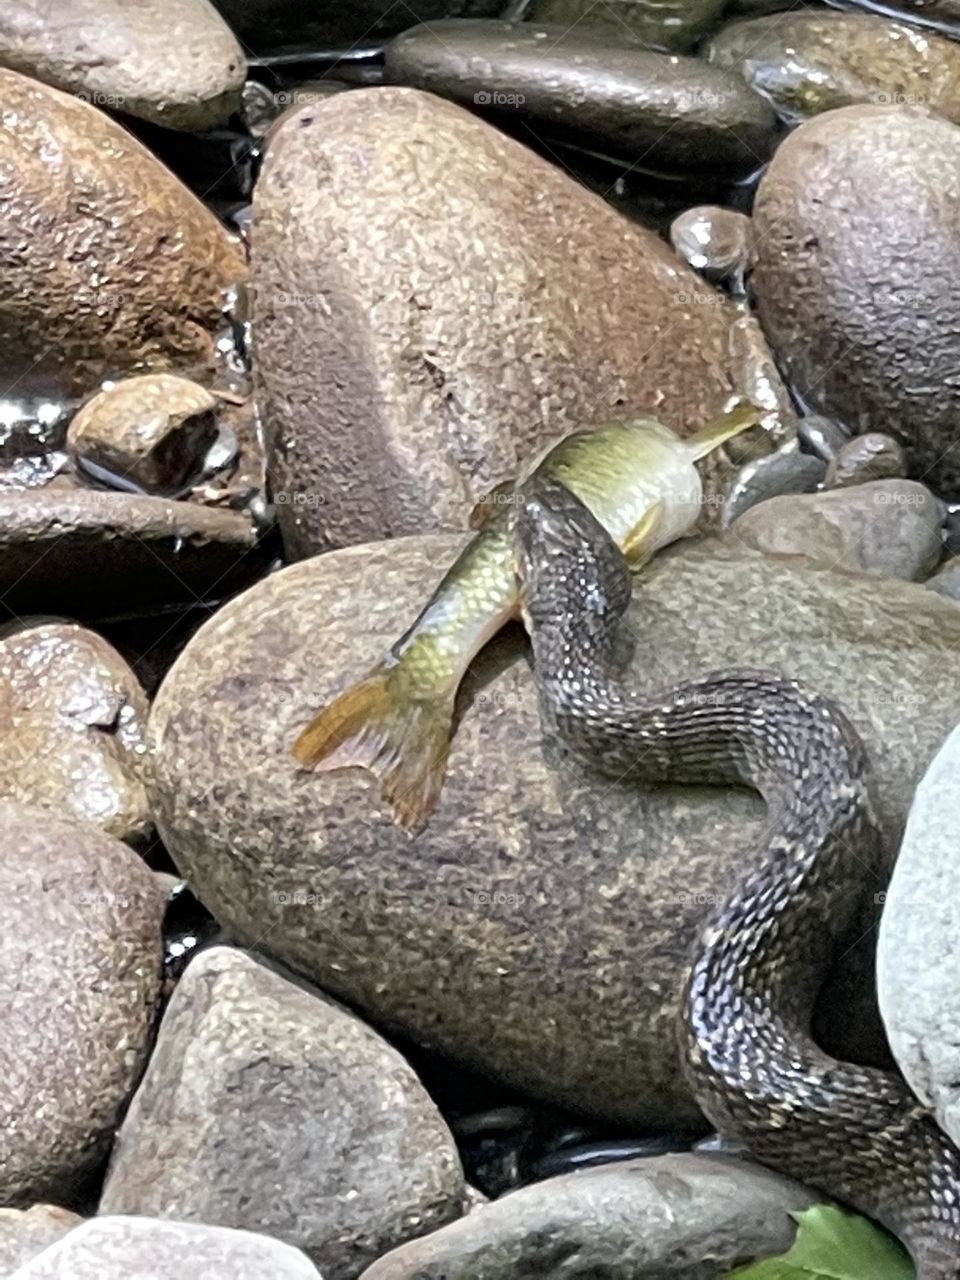 Snake catching fish